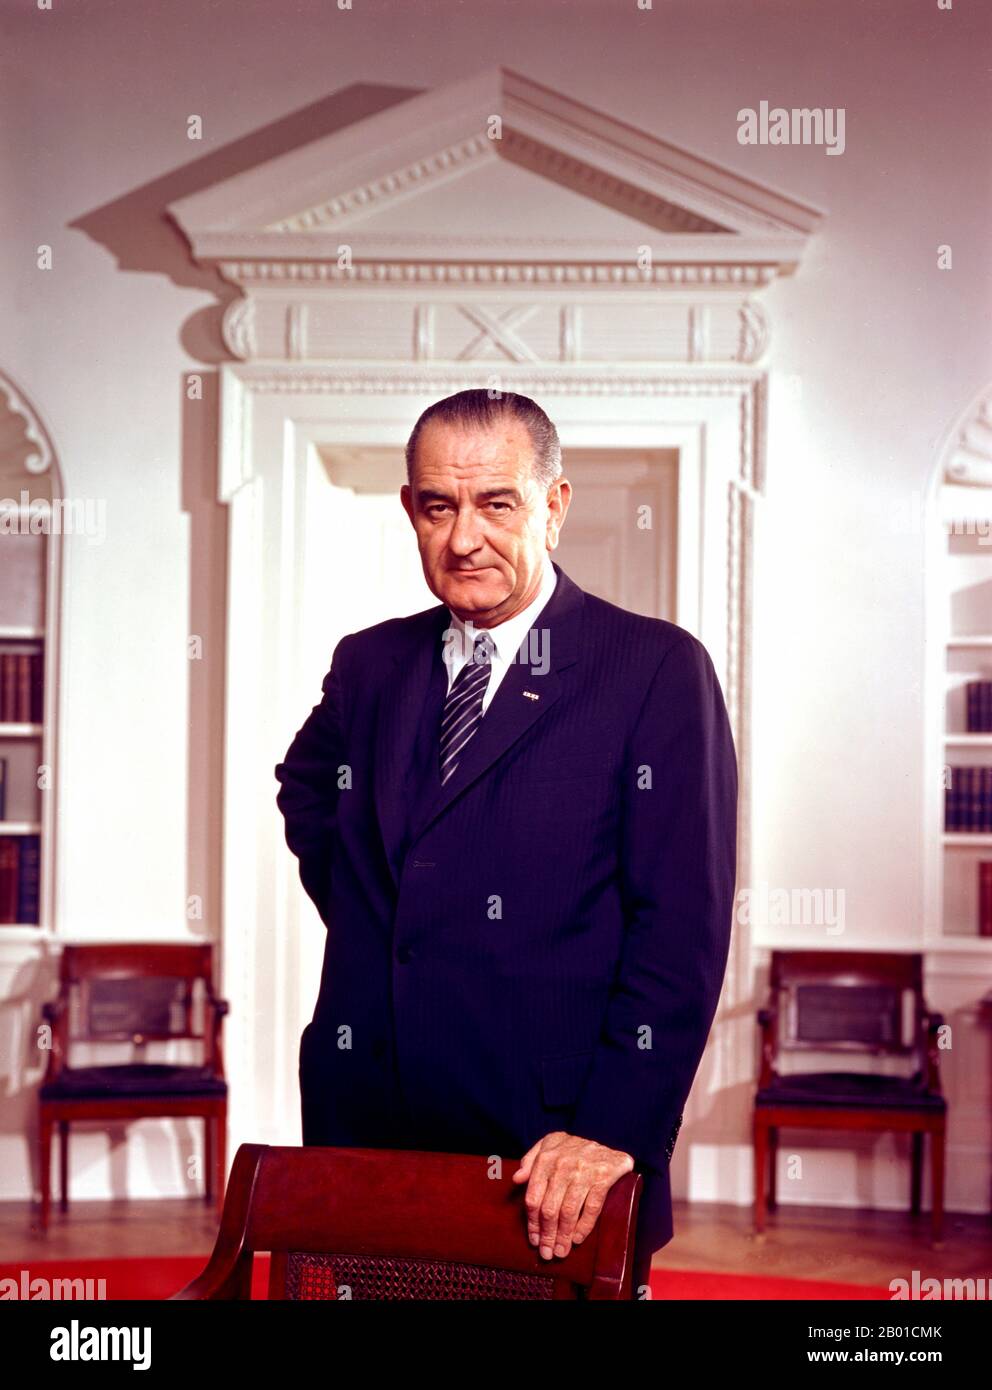 USA: Lyndon Baines Johnson (27 agosto 1908 - 22 gennaio 1973), 36th presidente degli Stati Uniti (1963-1969). Foto di Arnold Newman (1918-2006, pubblico dominio), Ufficio ovale, Casa Bianca, 10 marzo 1964. Lyndon Baines Johnson, spesso chiamato LBJ, è stato il 36th presidente degli Stati Uniti dopo il suo servizio come 37th vice presidente degli Stati Uniti (1961-1963). È una delle sole quattro persone che ha servito in tutti e quattro gli uffici federali eletti degli Stati Uniti: Rappresentante, senatore, vicepresidente e presidente. Foto Stock